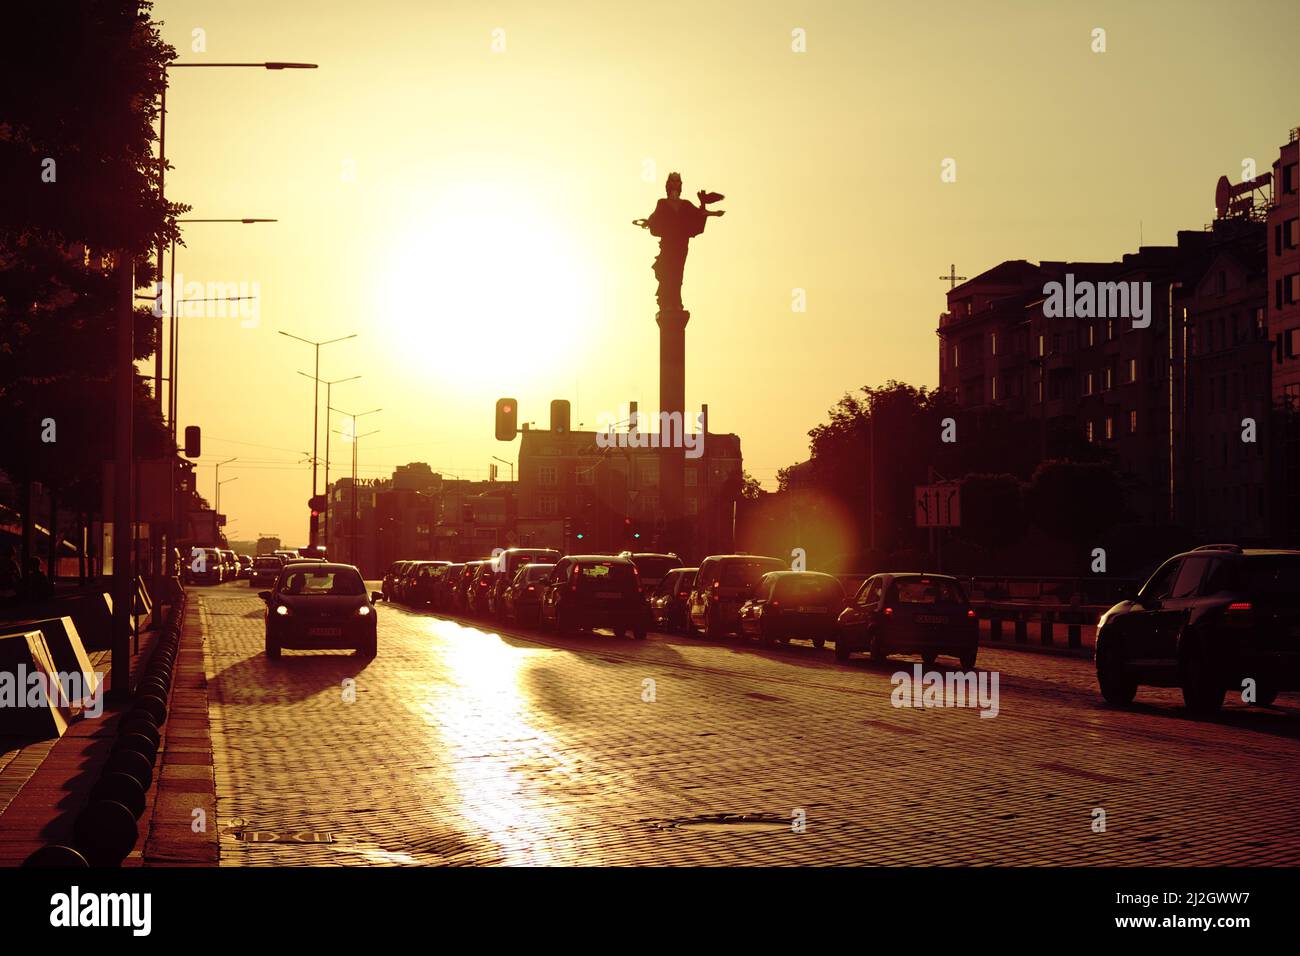 SOFIA, BULGARIA - 04 AGOSTO 2017: Silhouette monumento di Santa Sophia e le auto si illuminano sul crocevia nel centro di Sofia al tramonto Foto Stock